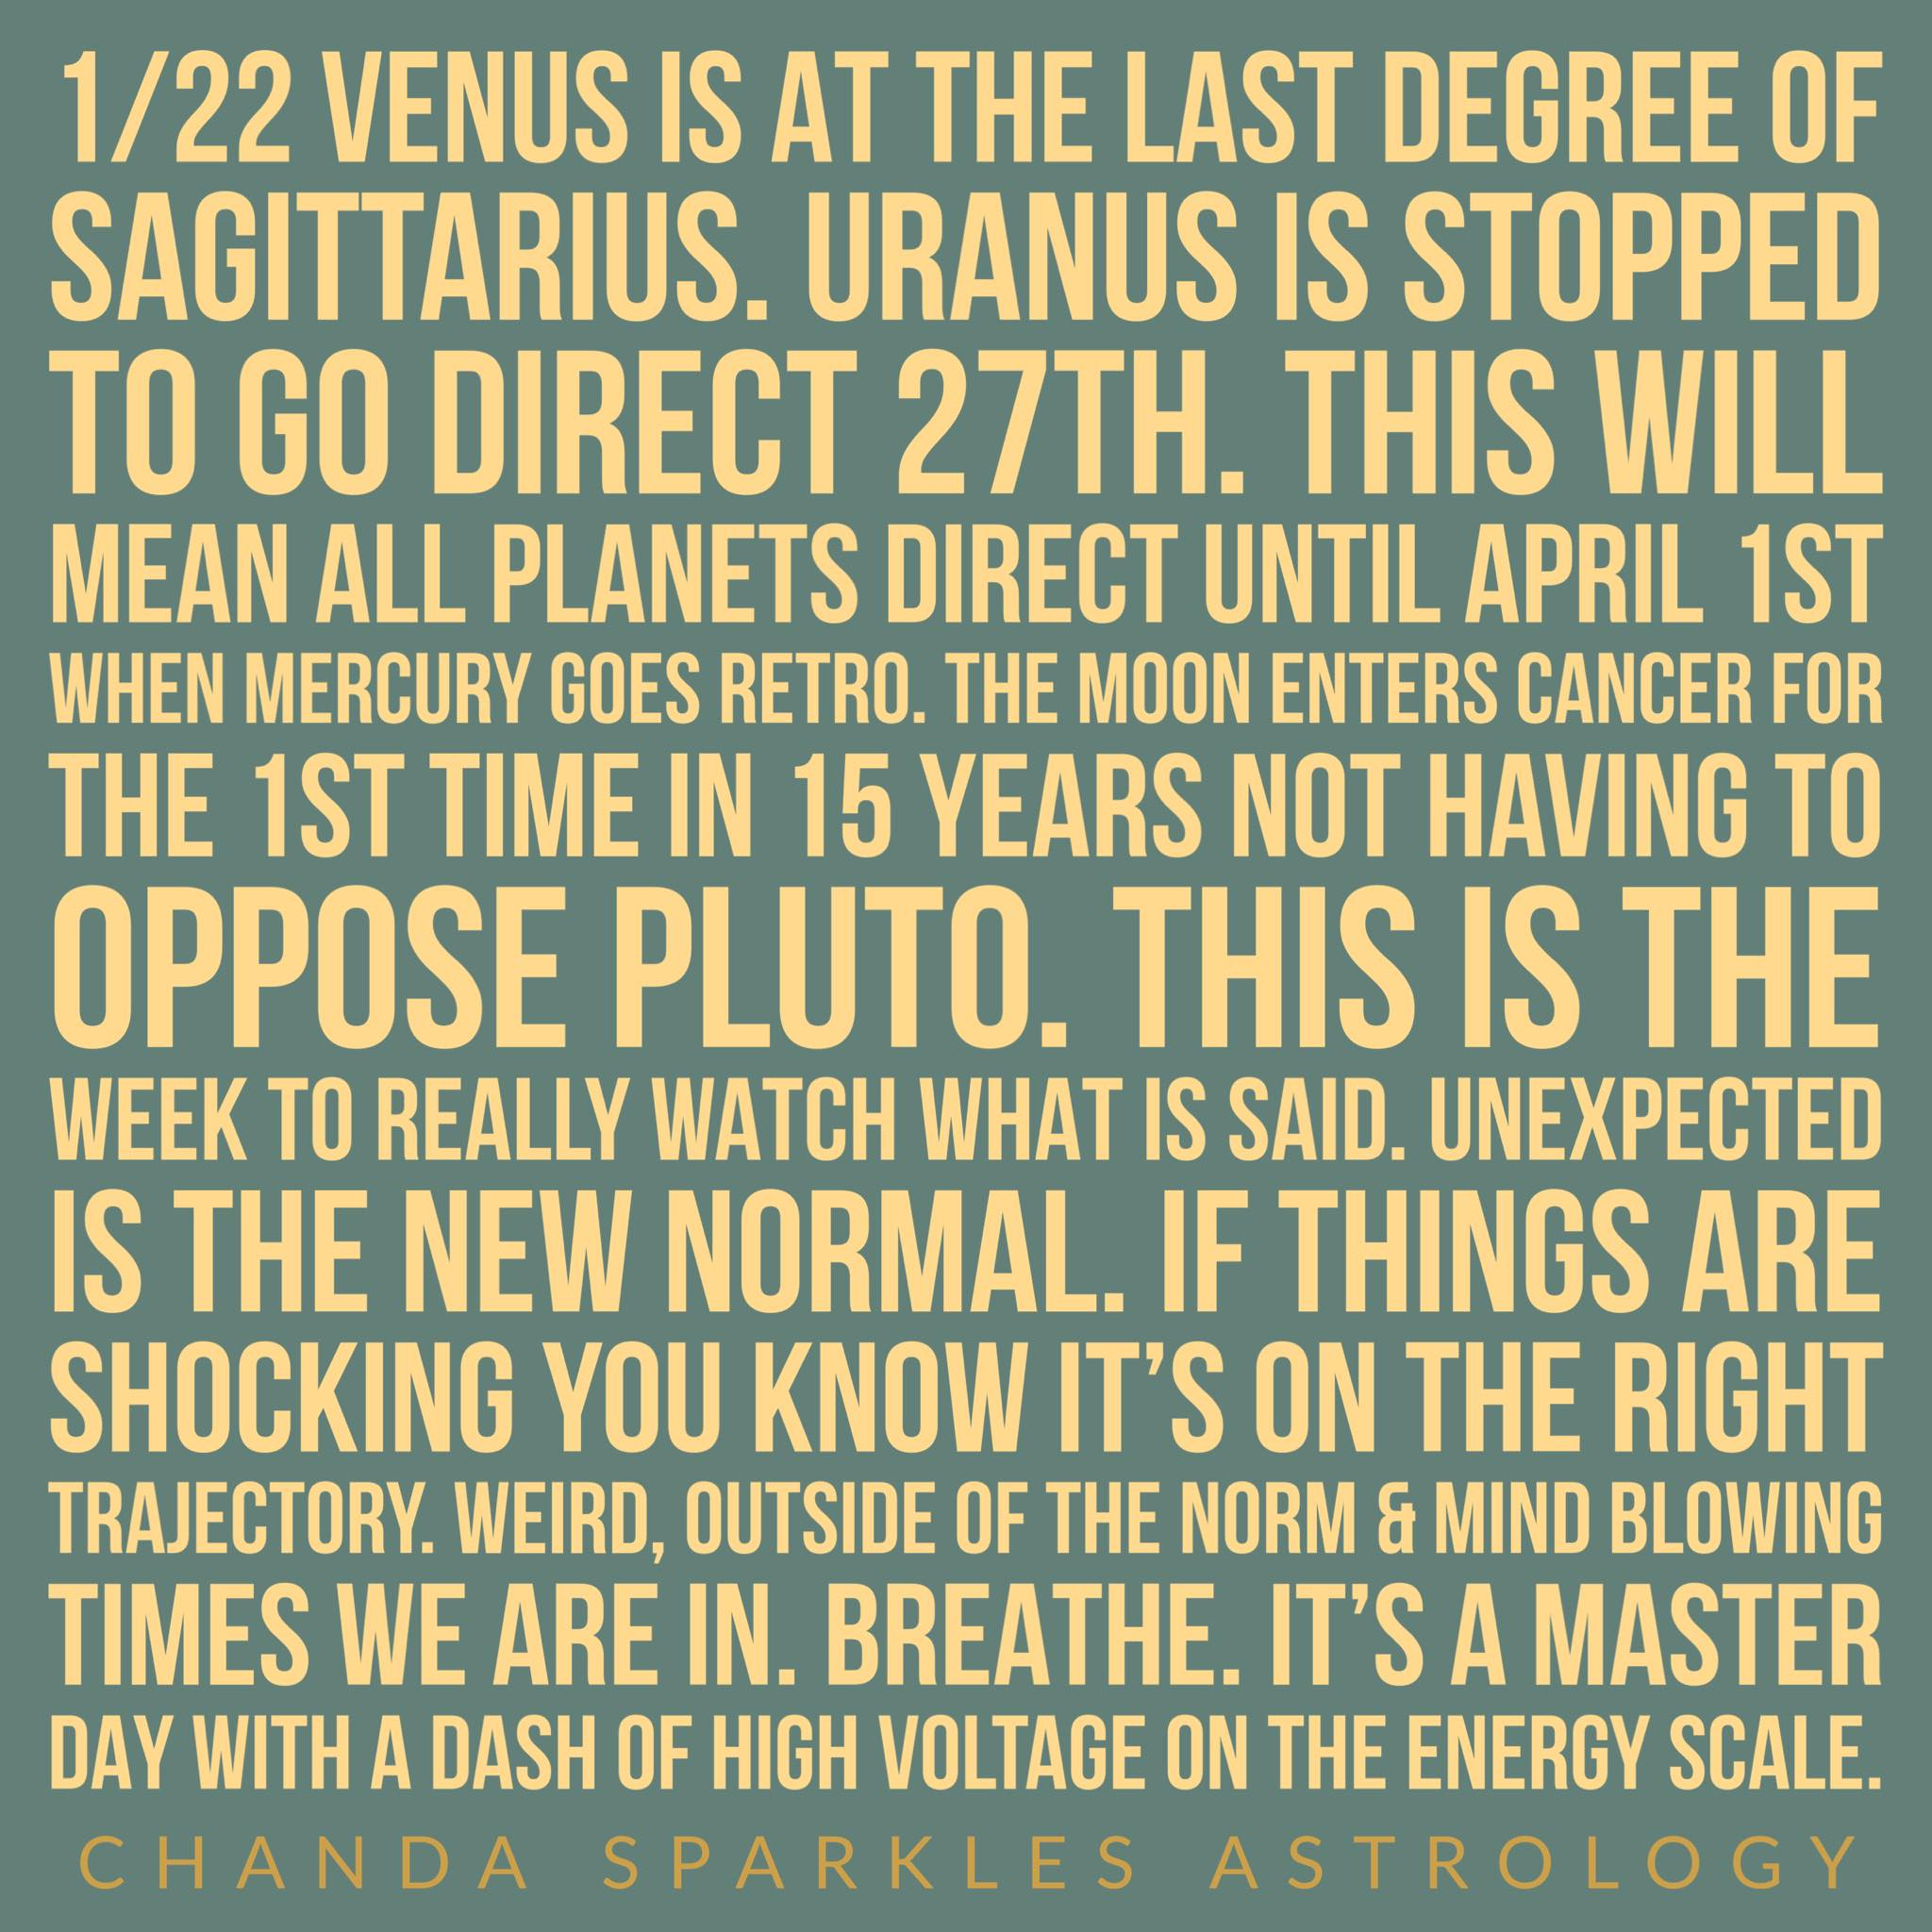 Venus is at the last degree of Sagittarius